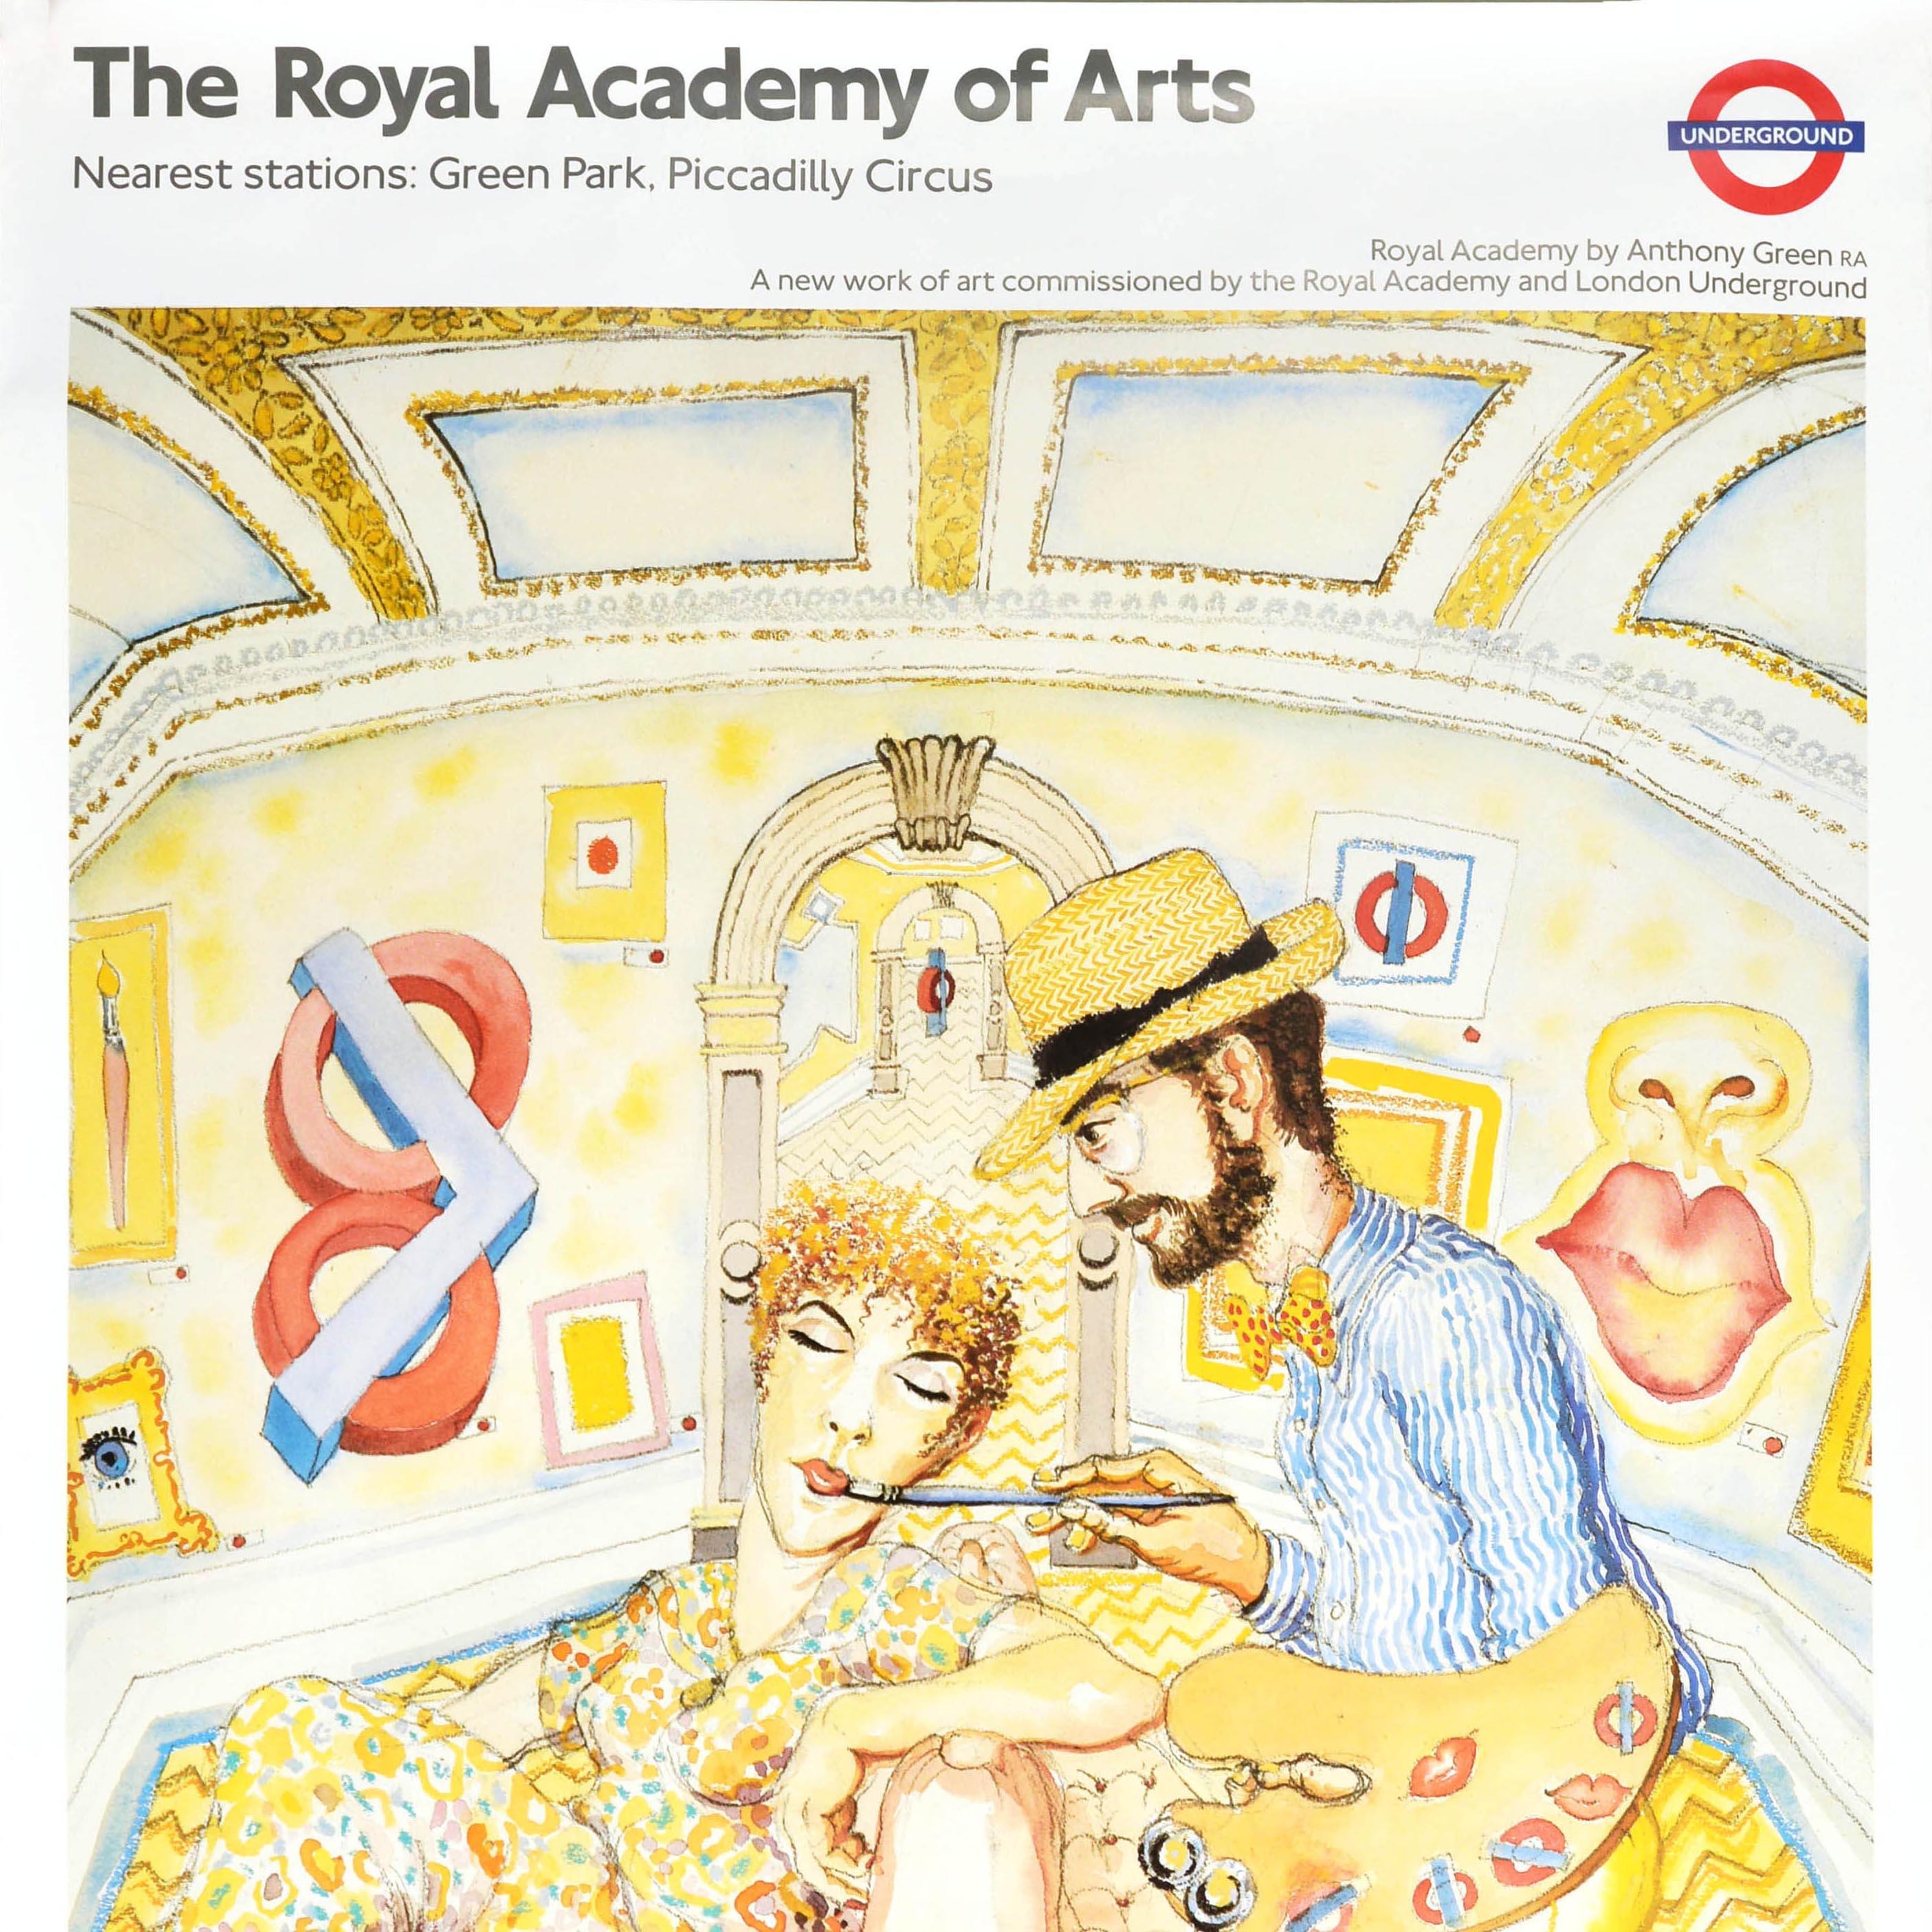 Affiche originale vintage du métro de Londres - The Royal Academy of Arts stations les plus proches Green Park, Piccadilly Circus - représentant un dessin abstrait d'un peintre tenant une palette de peinture et peignant le visage d'une dame assise